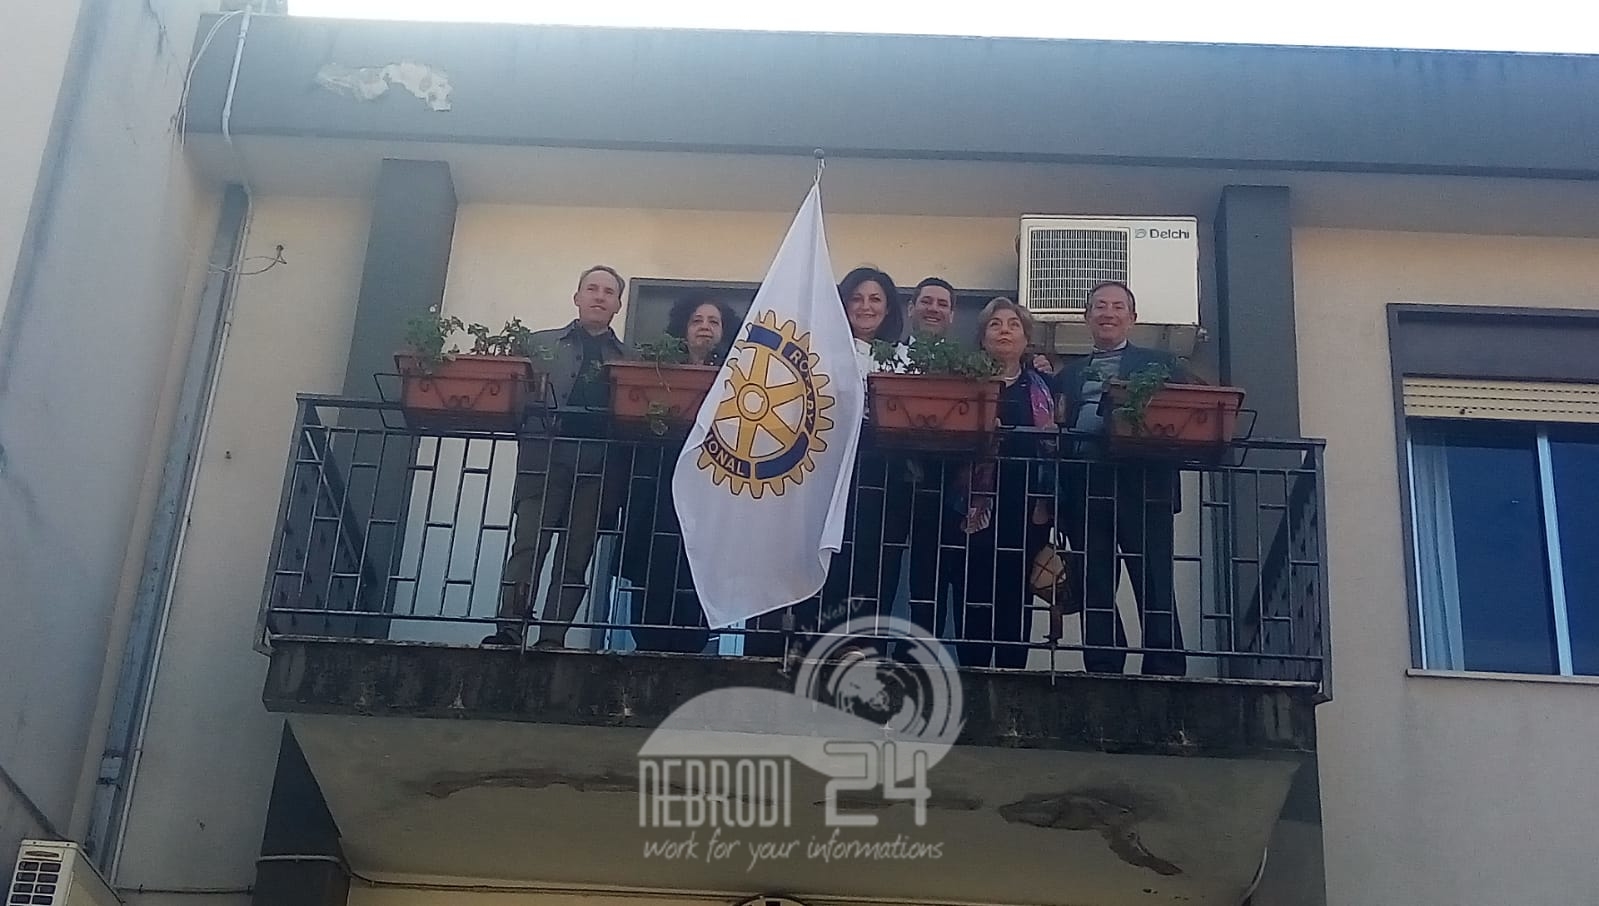 Brolo – Il Rotary Club Patti – Terra del Tindari celebra il Rotary Day (115 anni) con i sindaci Aquino e Laccoto